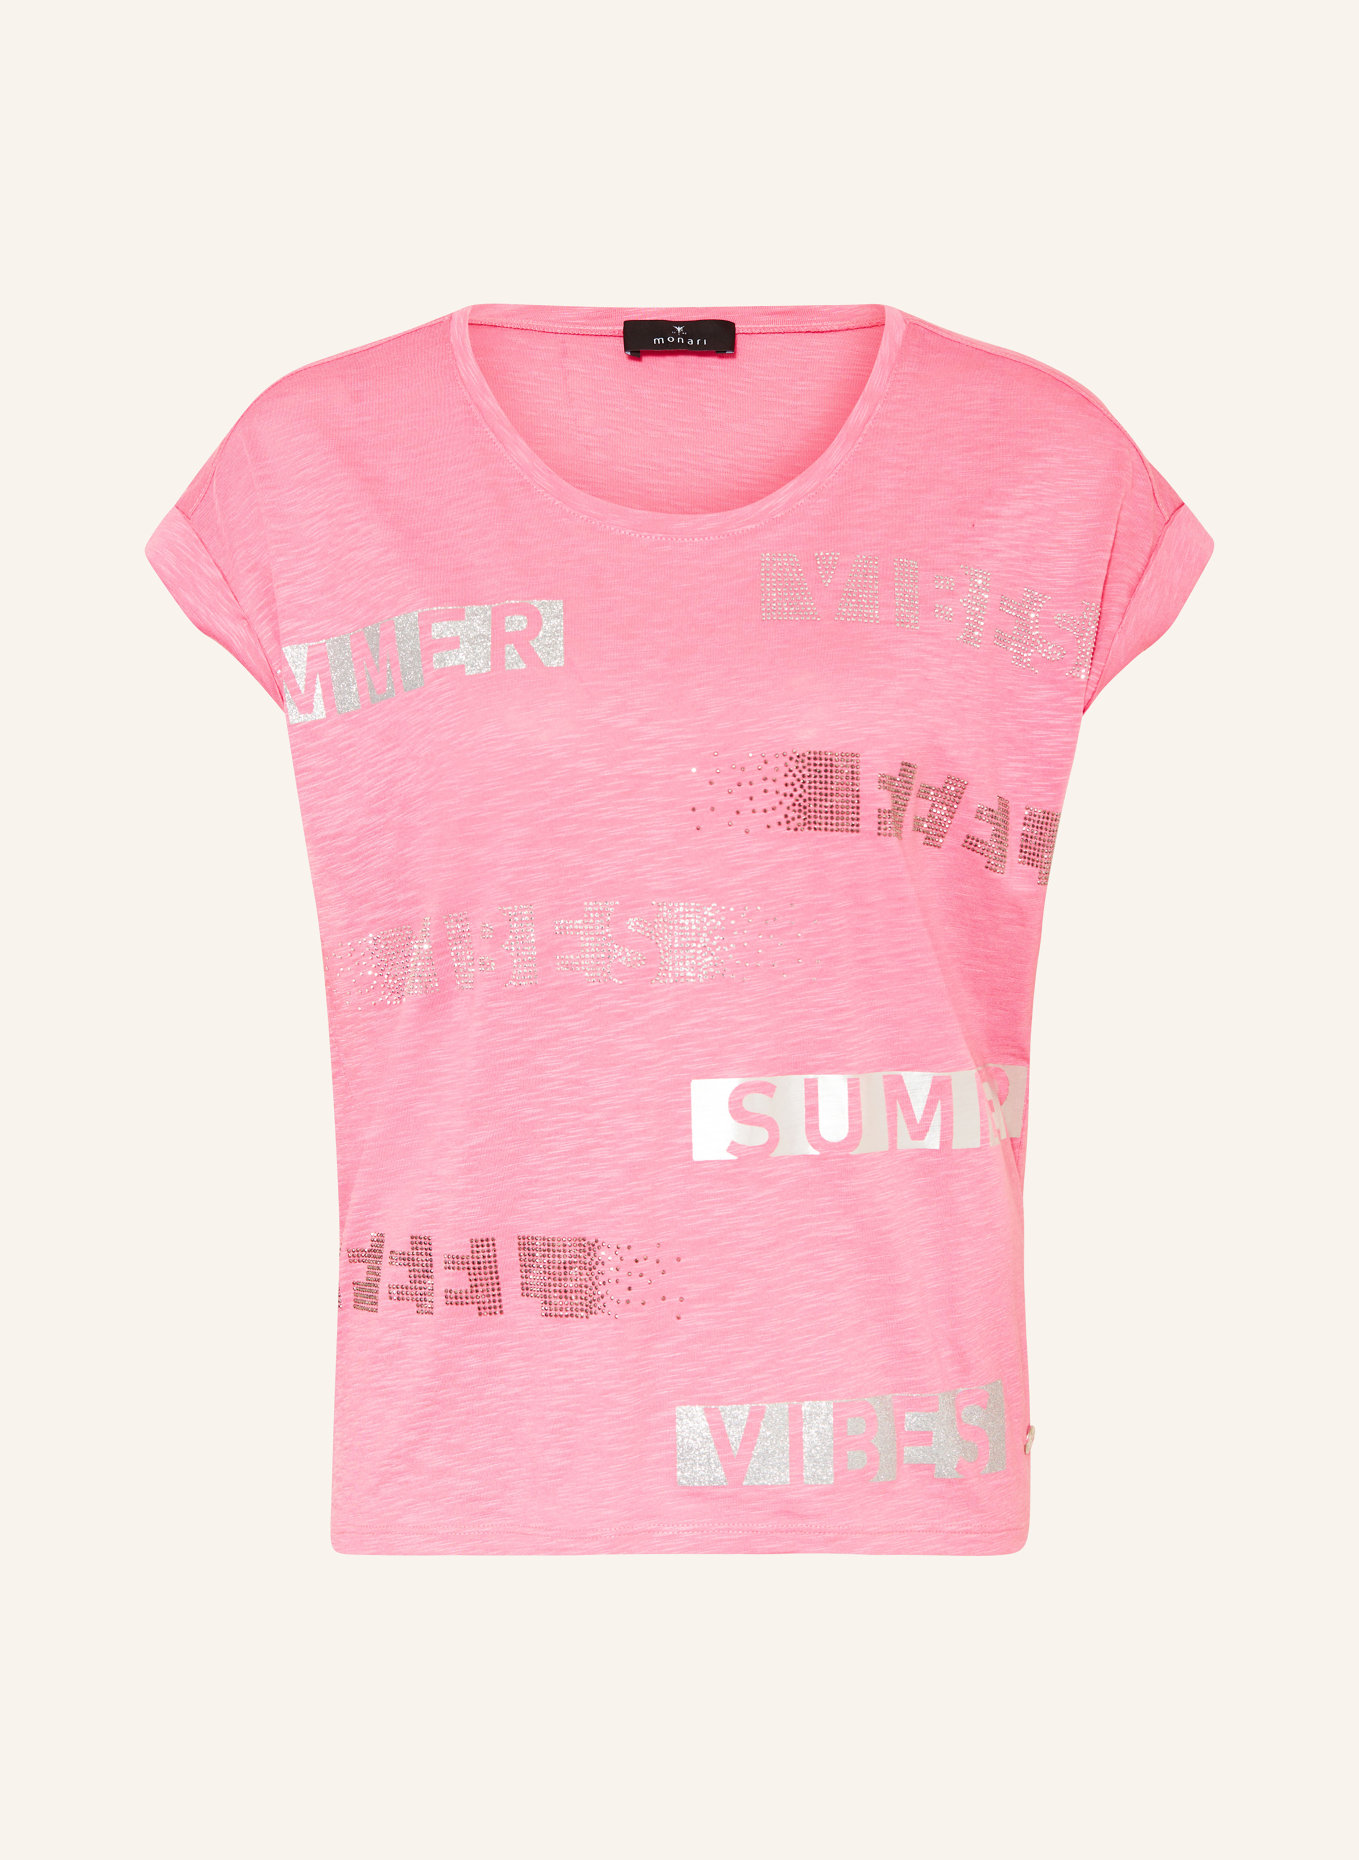 monari T-Shirt mit Schmucksteinen, Farbe: 400 berry sorbet (Bild 1)